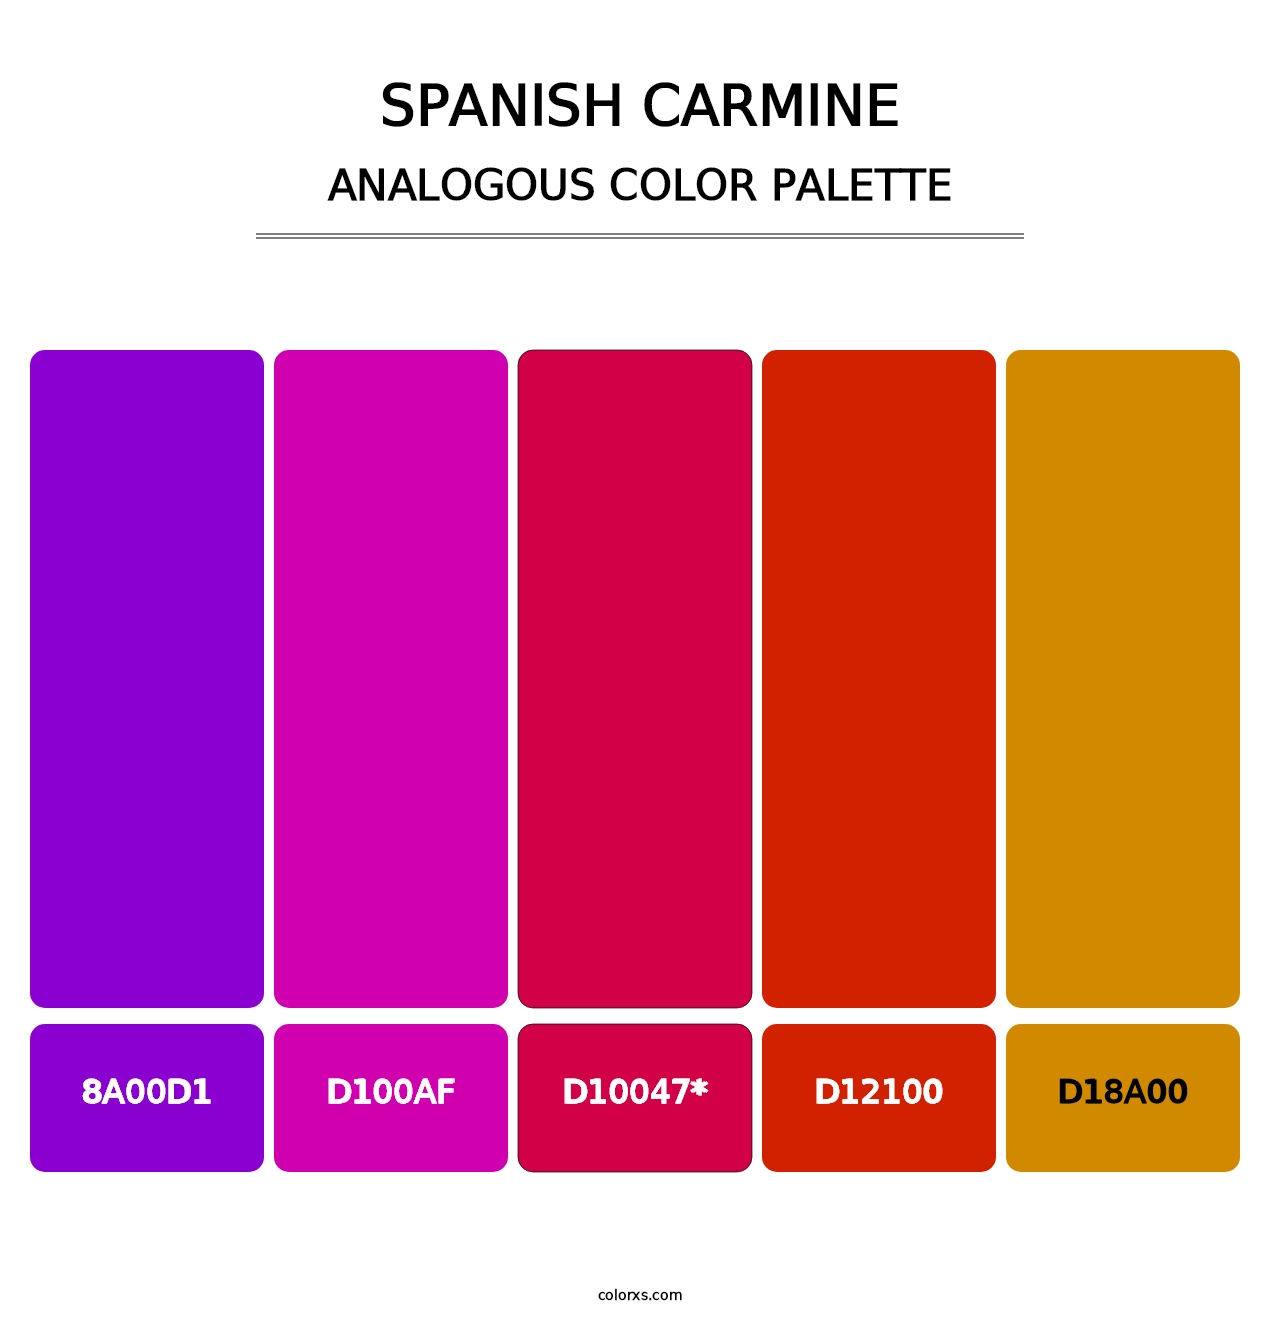 Spanish Carmine - Analogous Color Palette